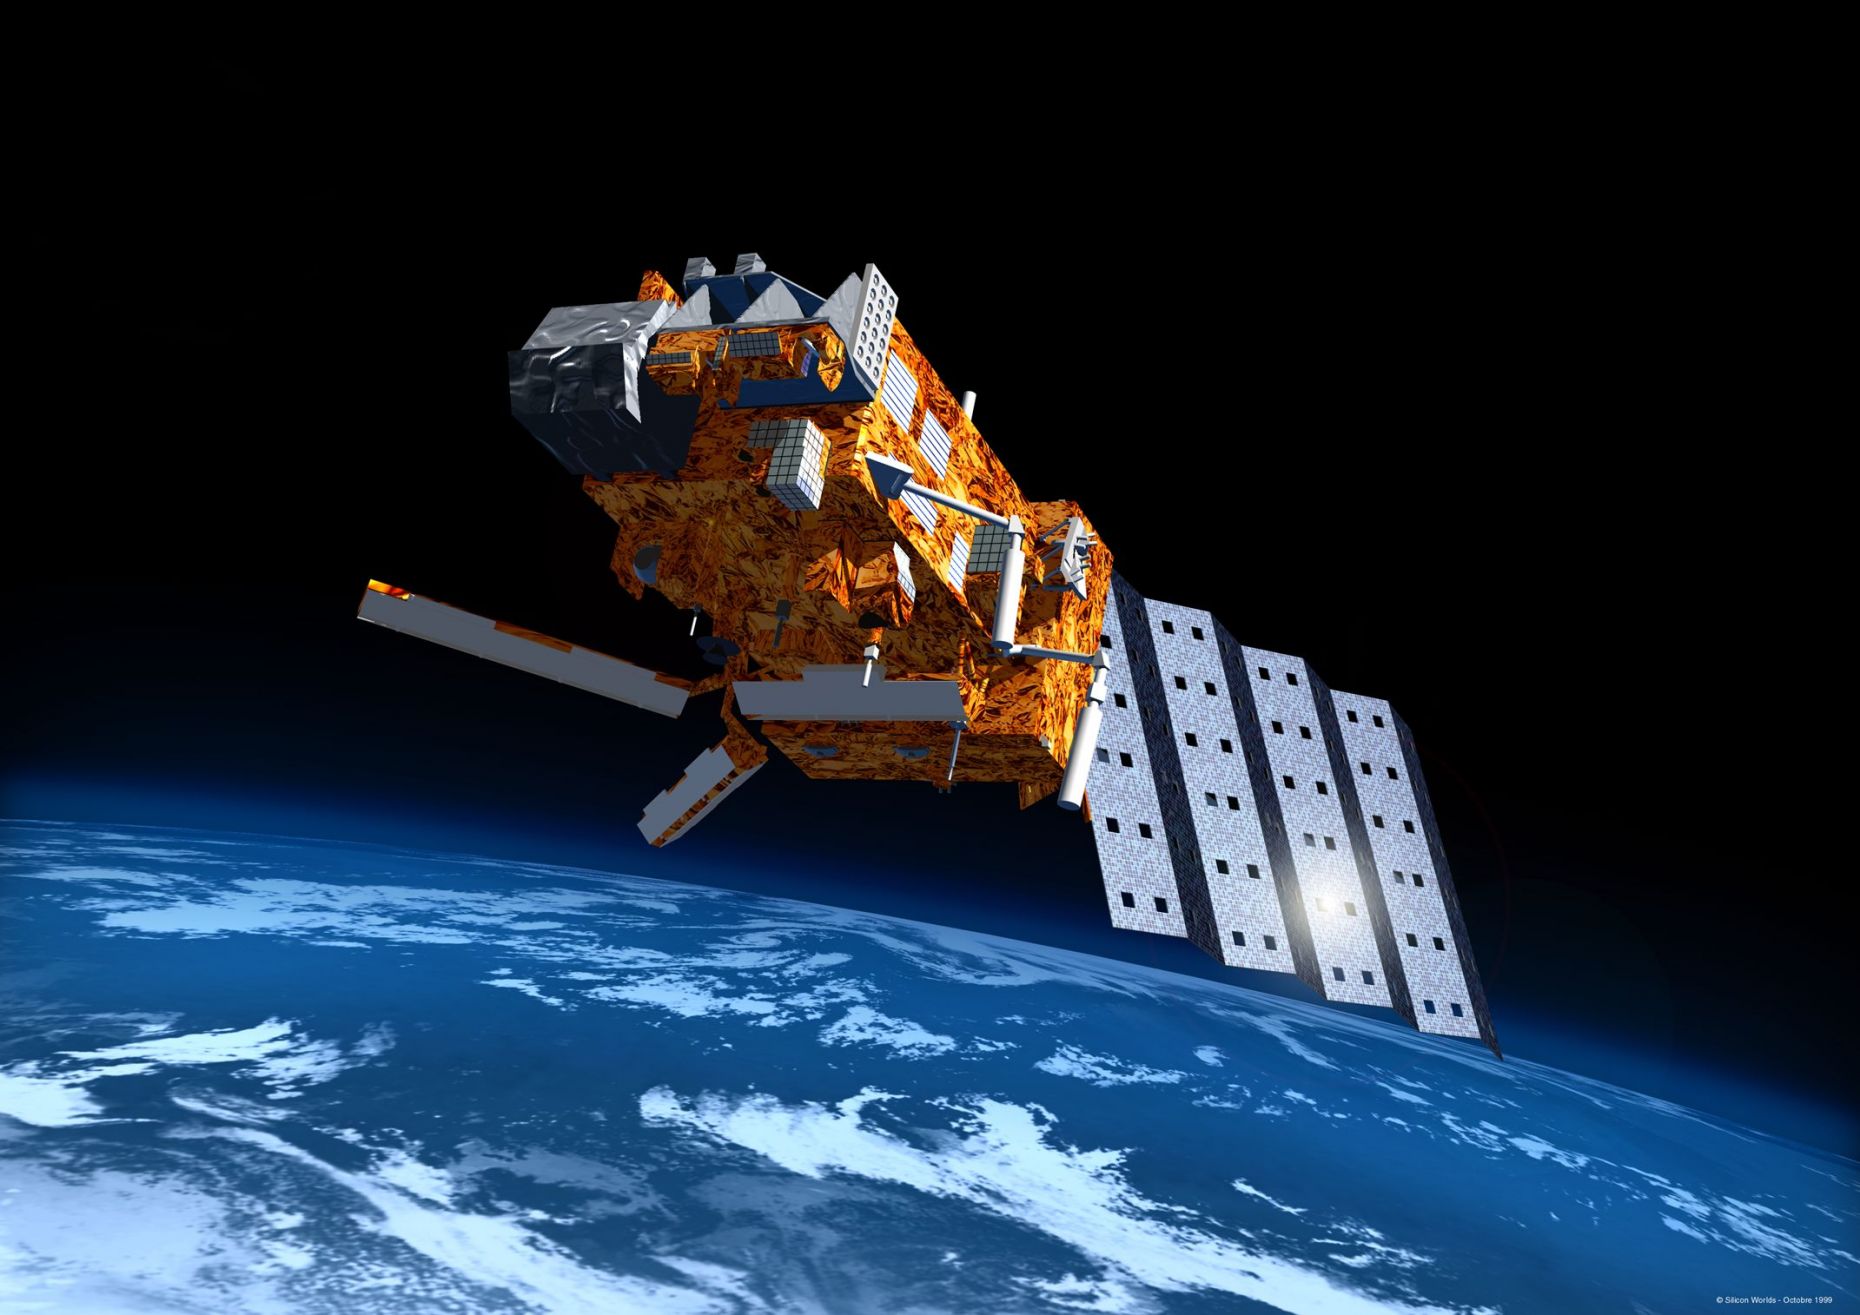 MetOp Satellite in space